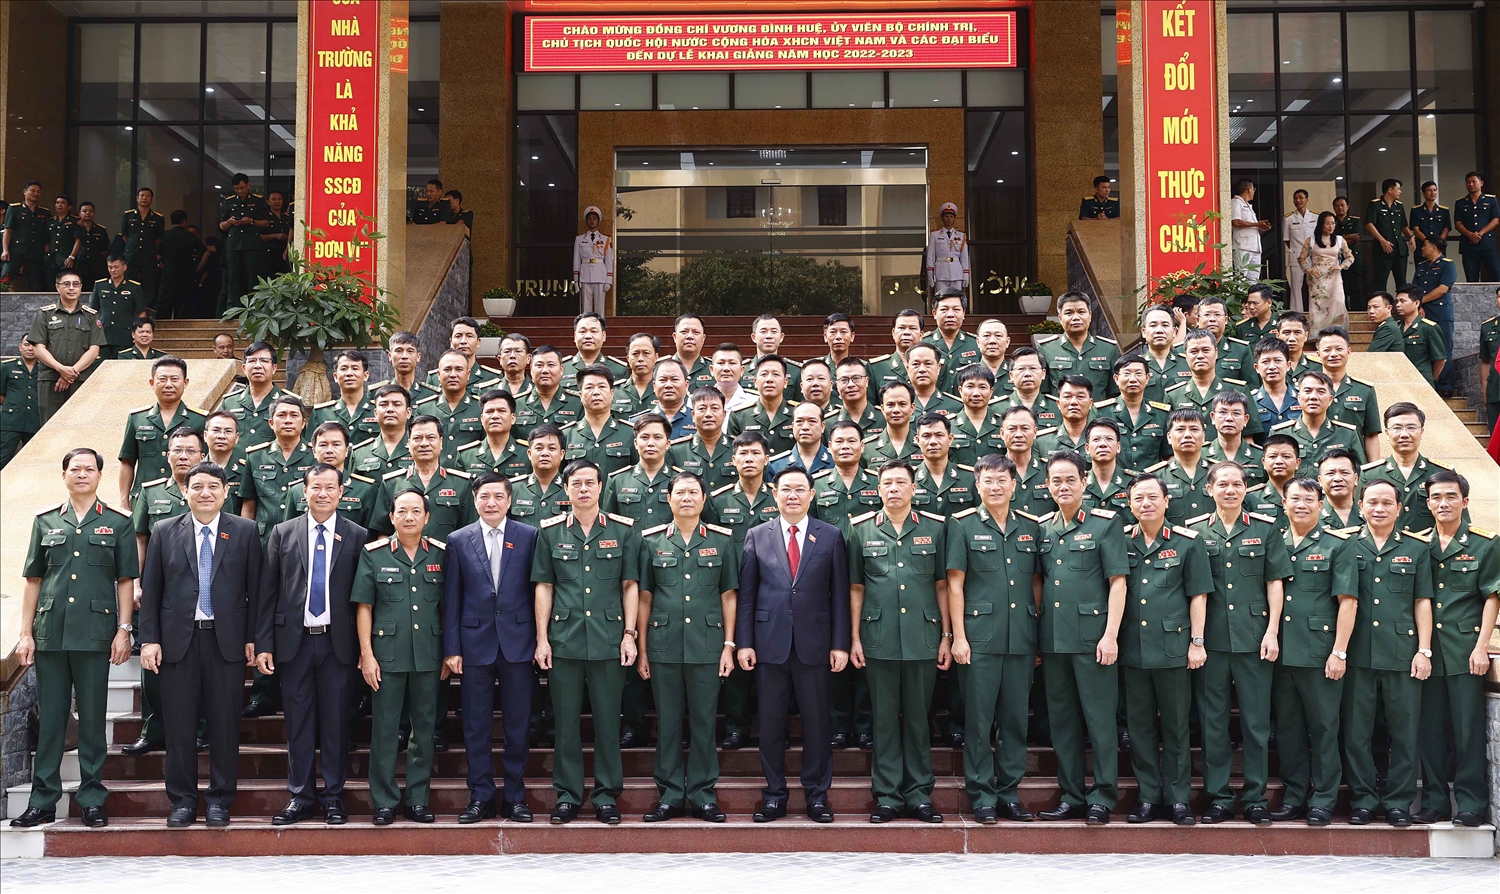 GS.TS Vương Đình Huệ - Chủ tịch Quốc hội, cùng các đại biểu chụp ảnh lưu niệm với Lãnh đạo, cán bộ Học viện Quốc phòng. Ảnh QH